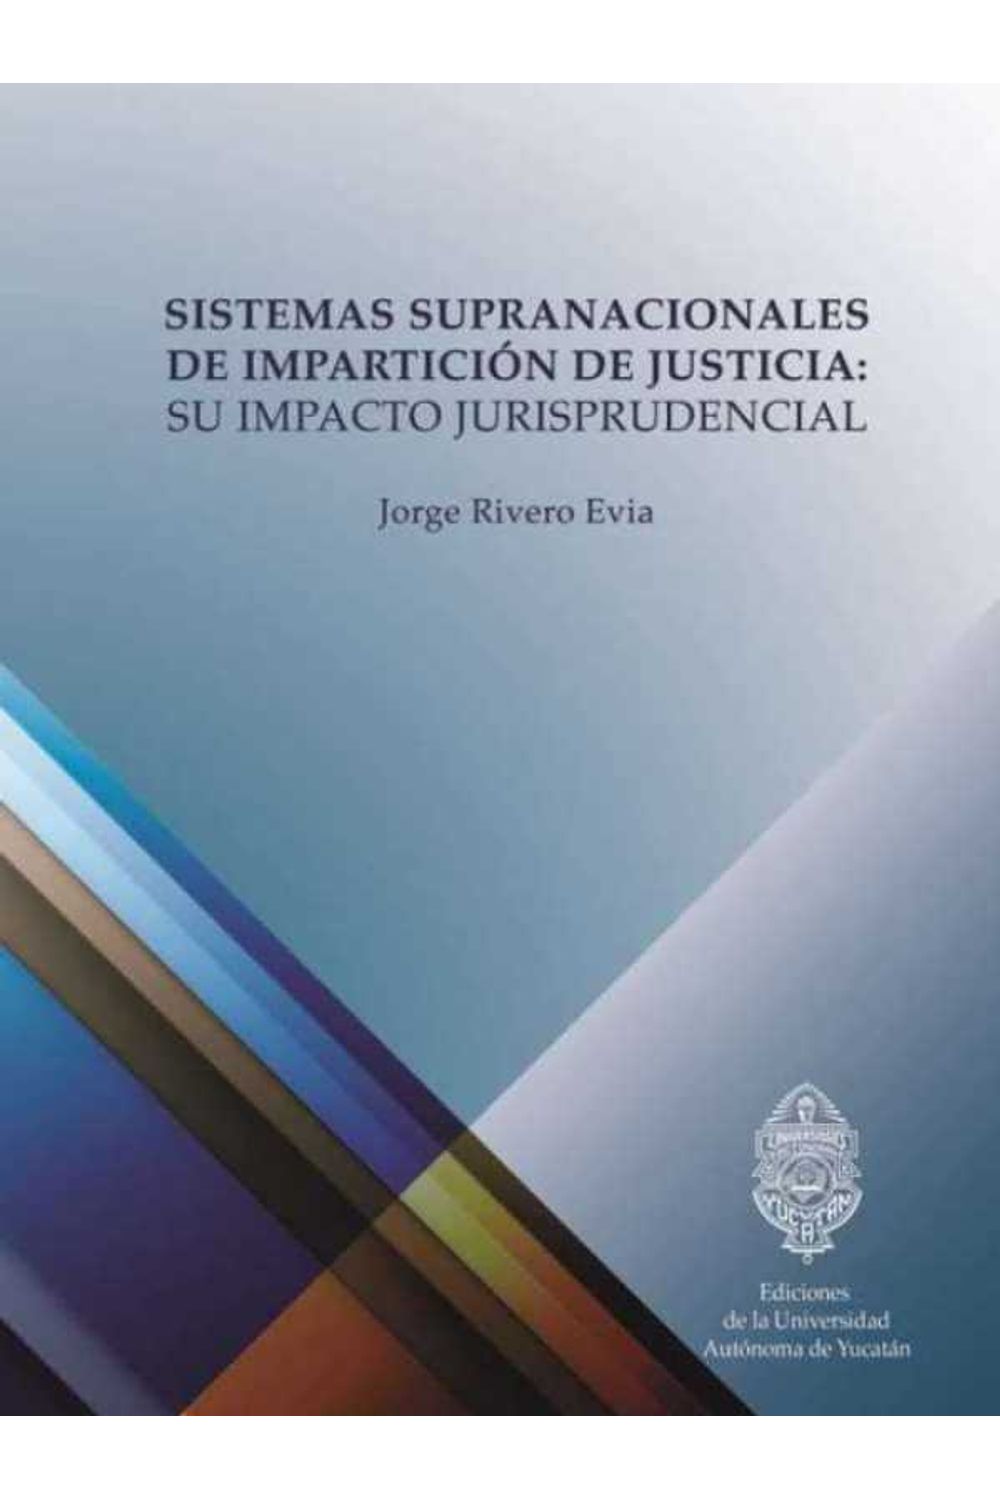 bm-sistemas-supranacionales-de-imparticion-de-justicia-universidad-autonoma-de-yucatan-uady-9786079405359